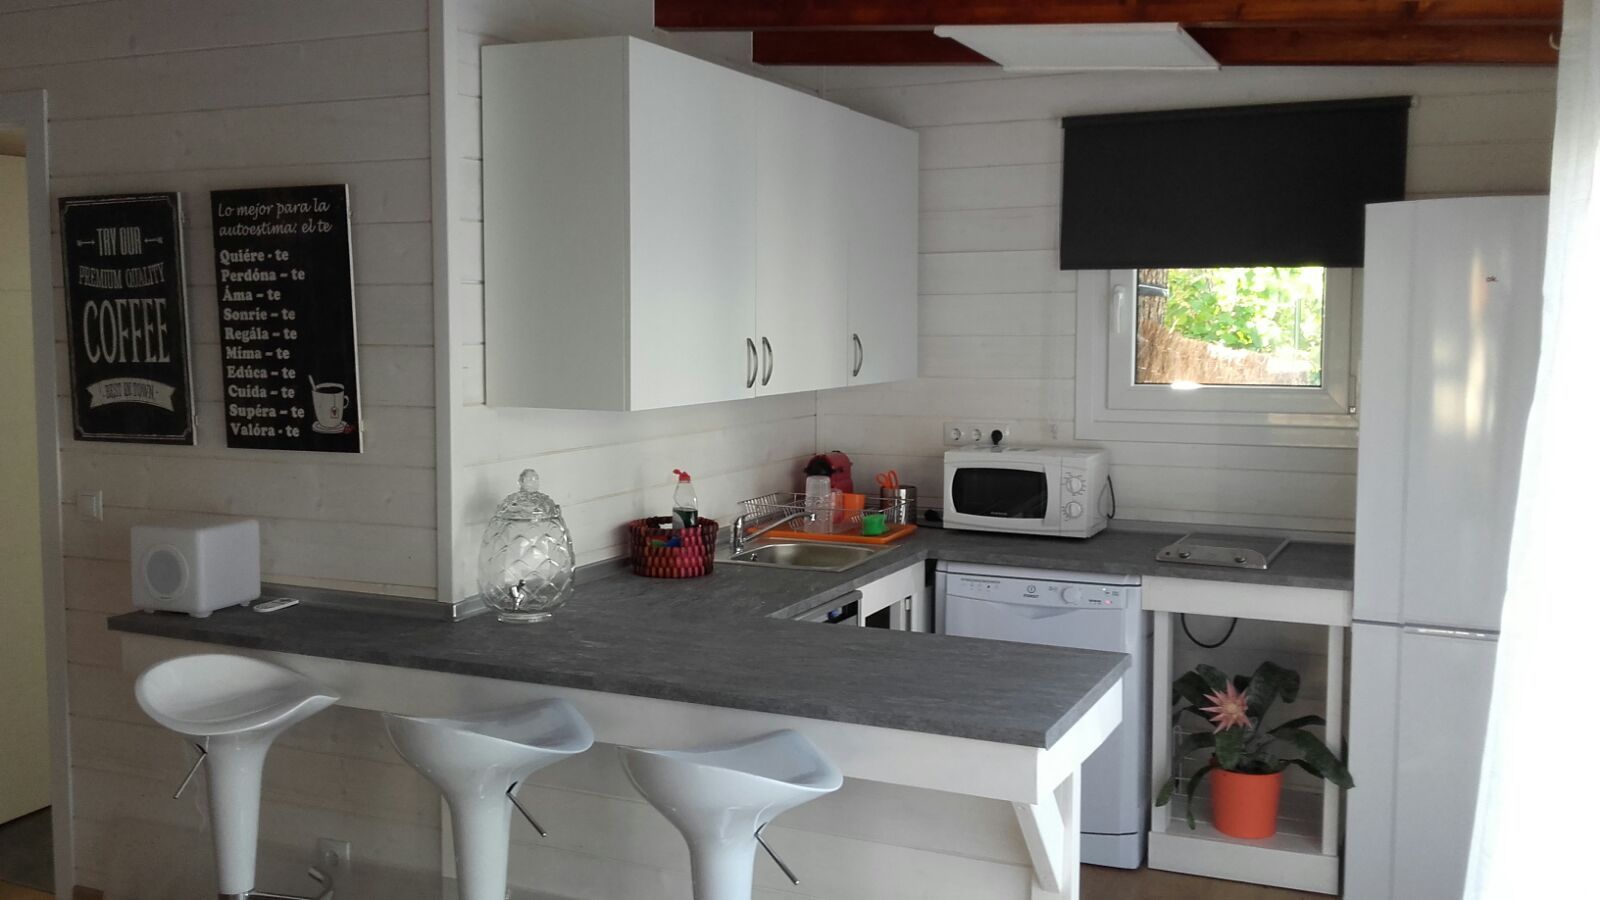 Cocina de la casa de madera habitable Construcción de casetas de Madera en Madrid Cocinas pequeñas cocina,cocinas pequeñas,casa de madera,prefabricada,casa habitable,caseta